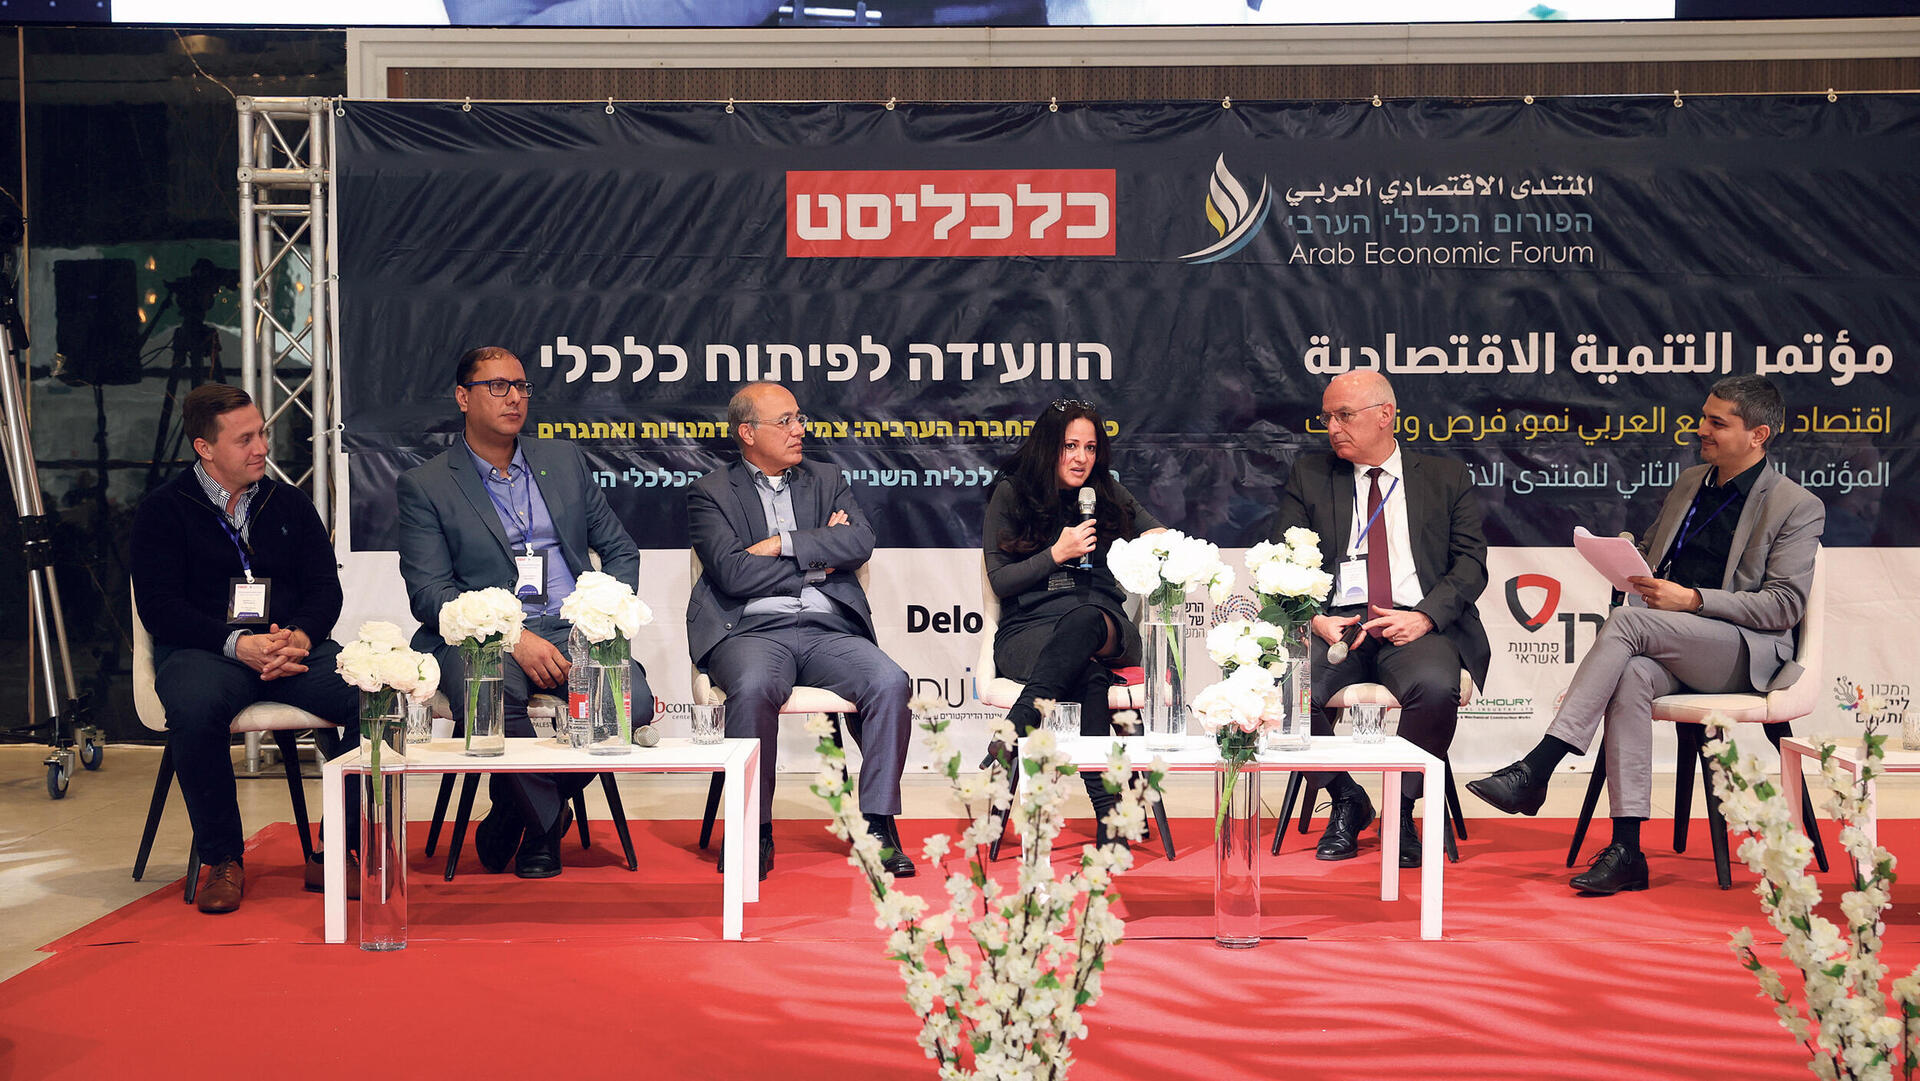 שוק האשראי בחברה הערבית הוועידה השנתית של הפורום הכלכלי הערבי